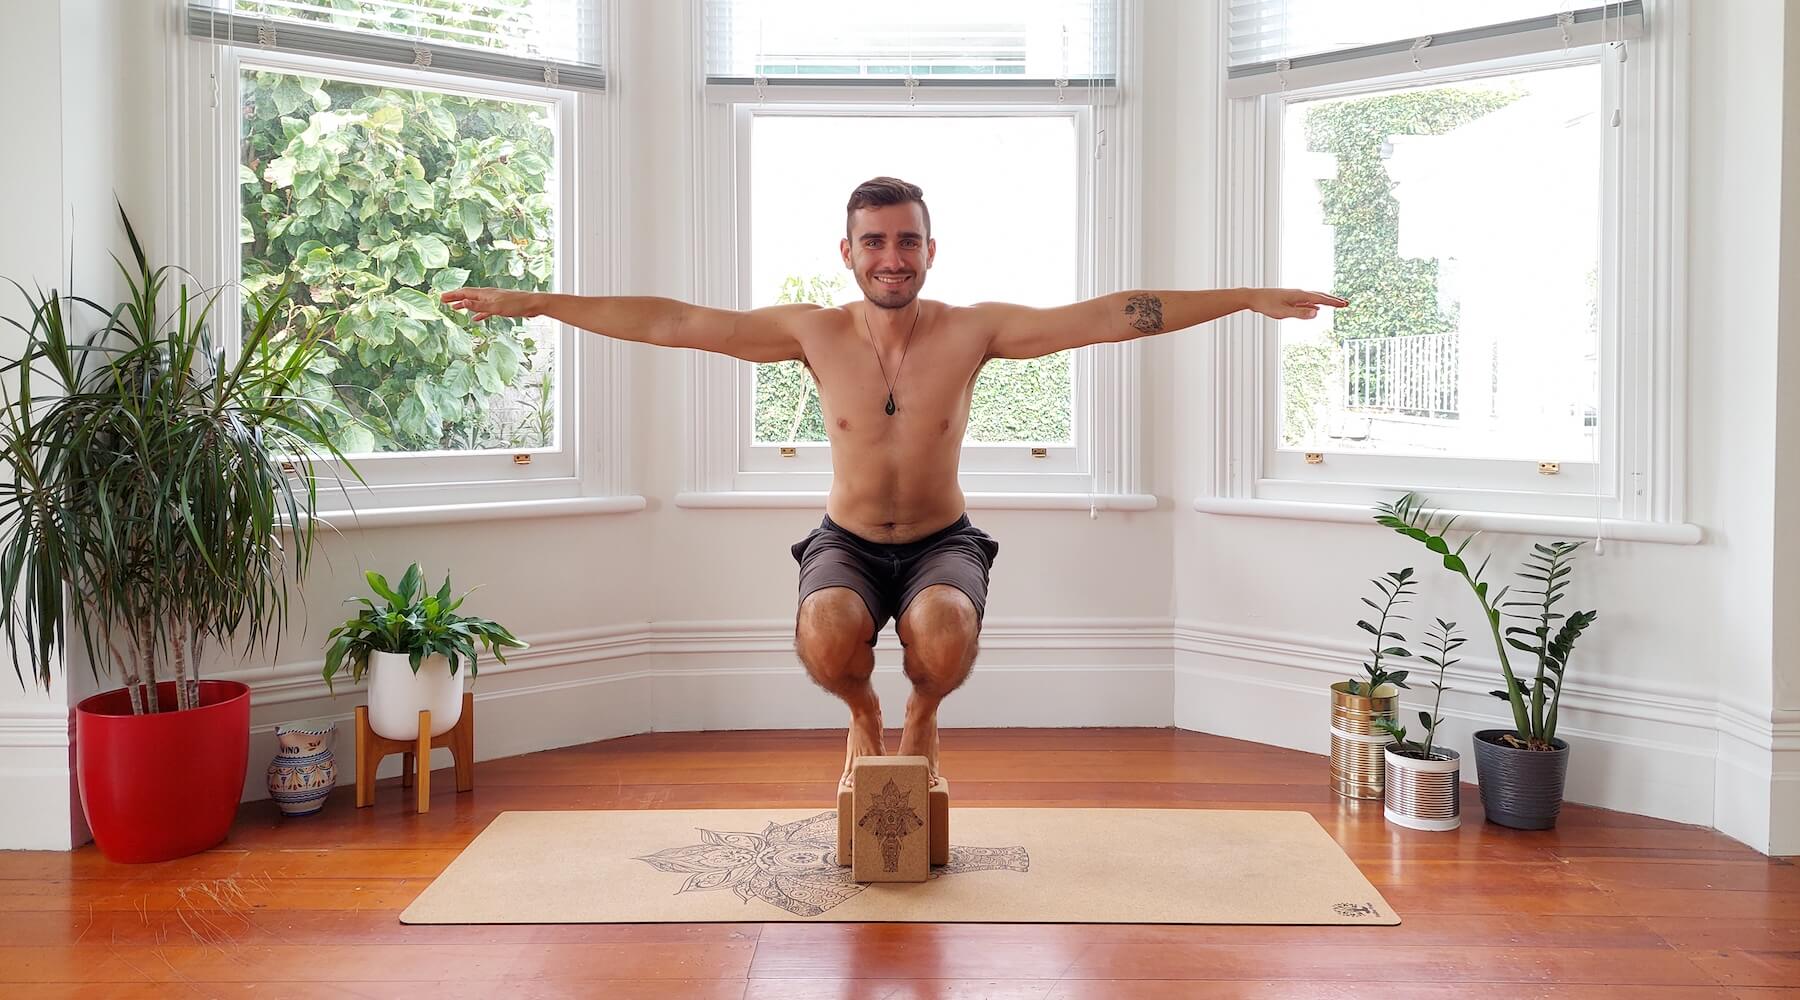 Yogi balancing on yoga blocks